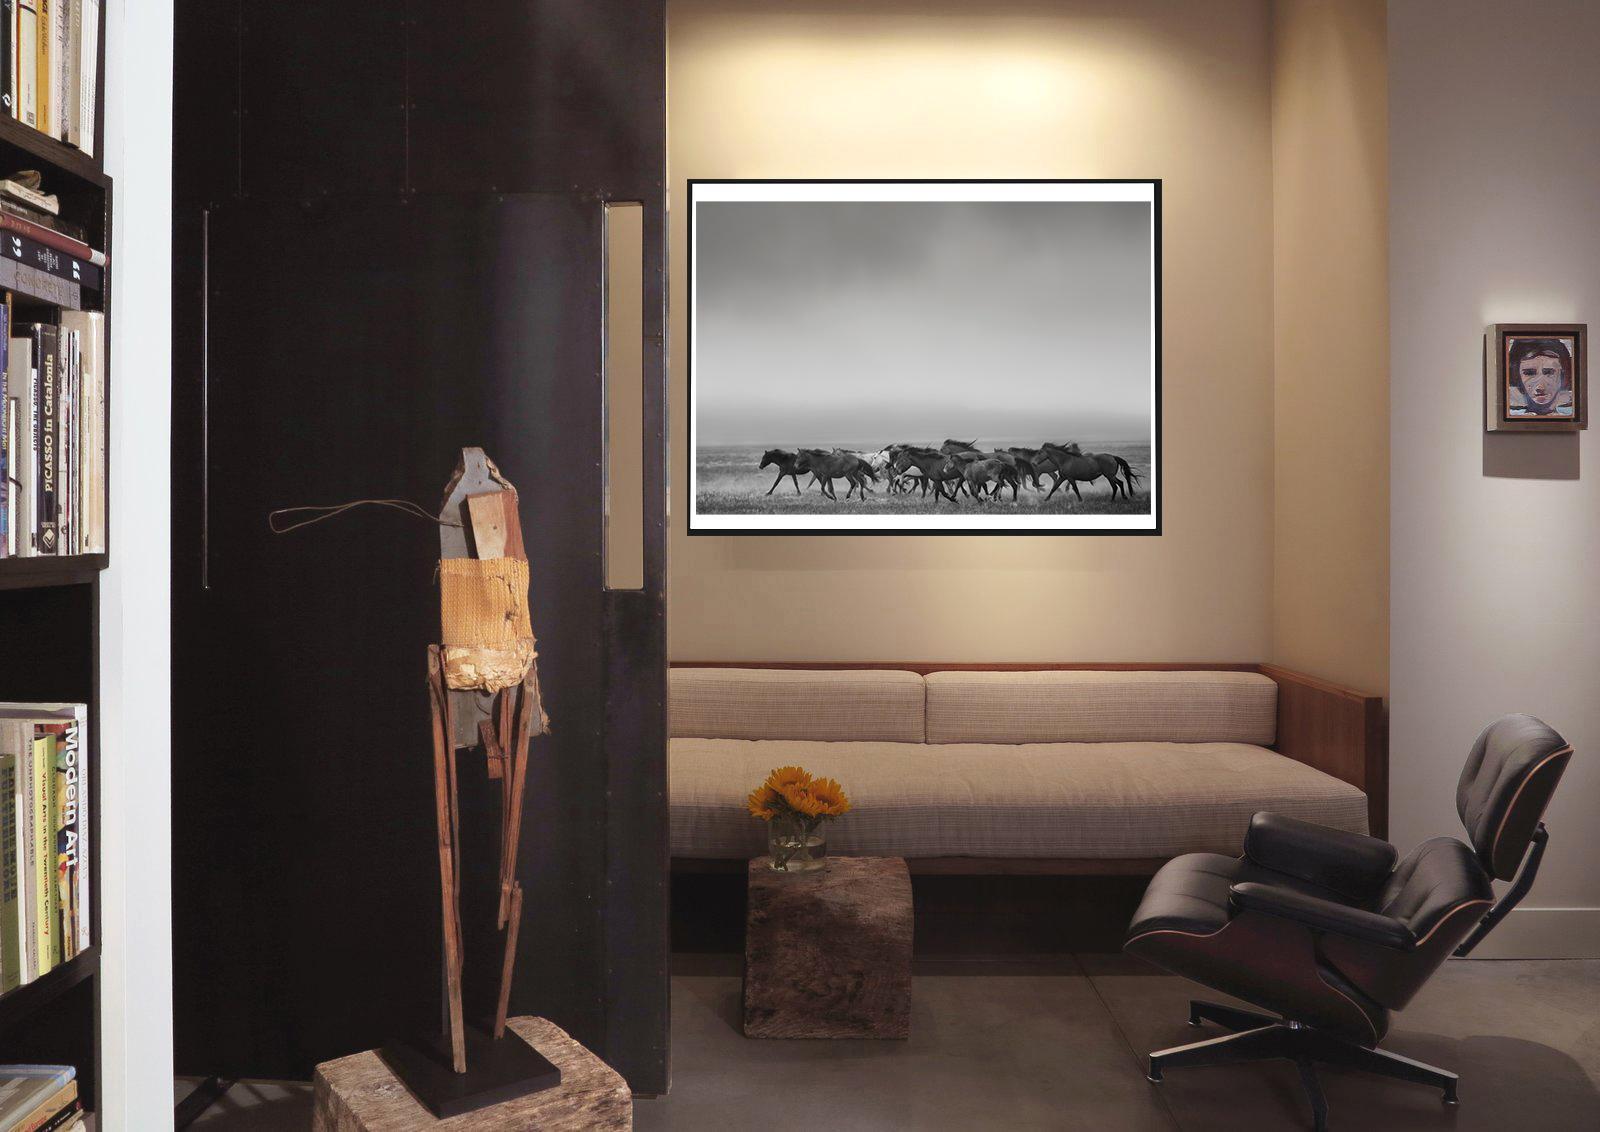 „Dream State“ – 40x50 Schwarz-Weiß-Fotografie mit Wildpferden in Senf, signiert – Photograph von Shane Russeck